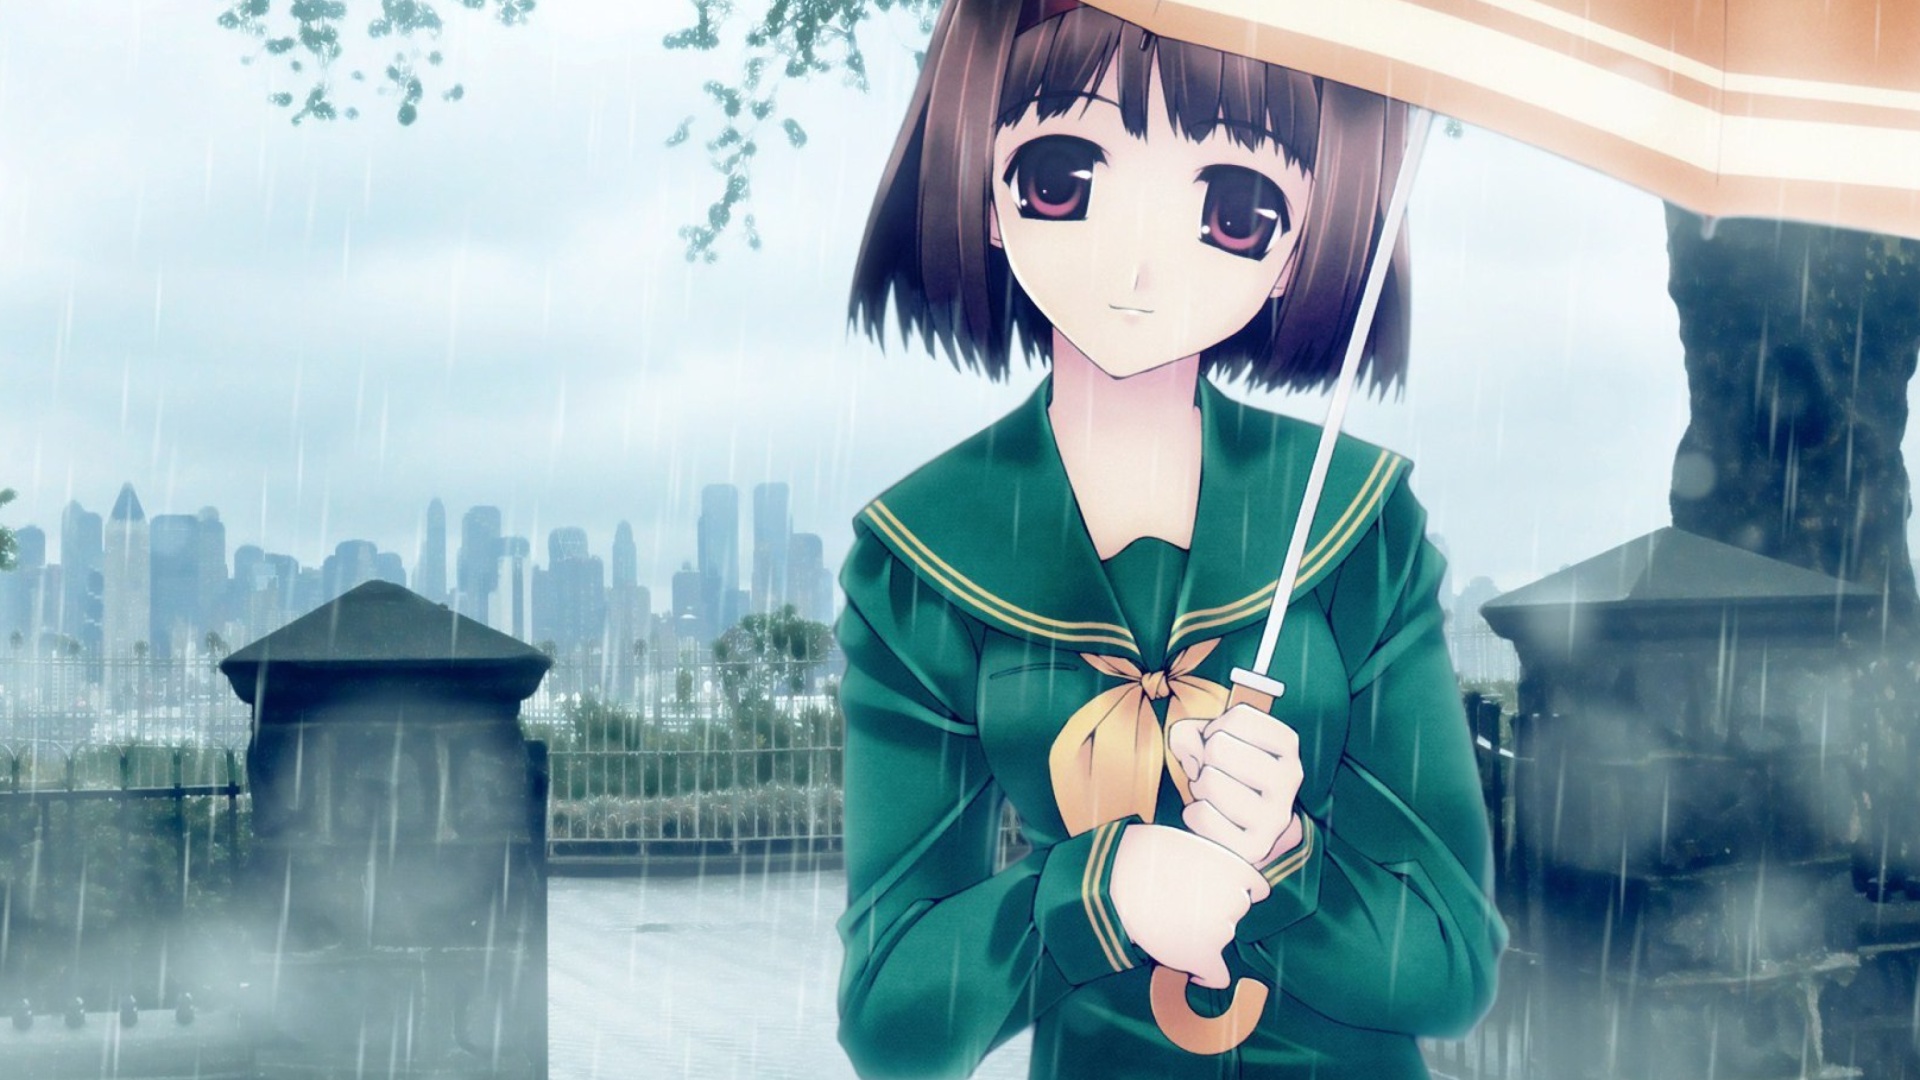 Обои Anime girl in rain 1920x1080